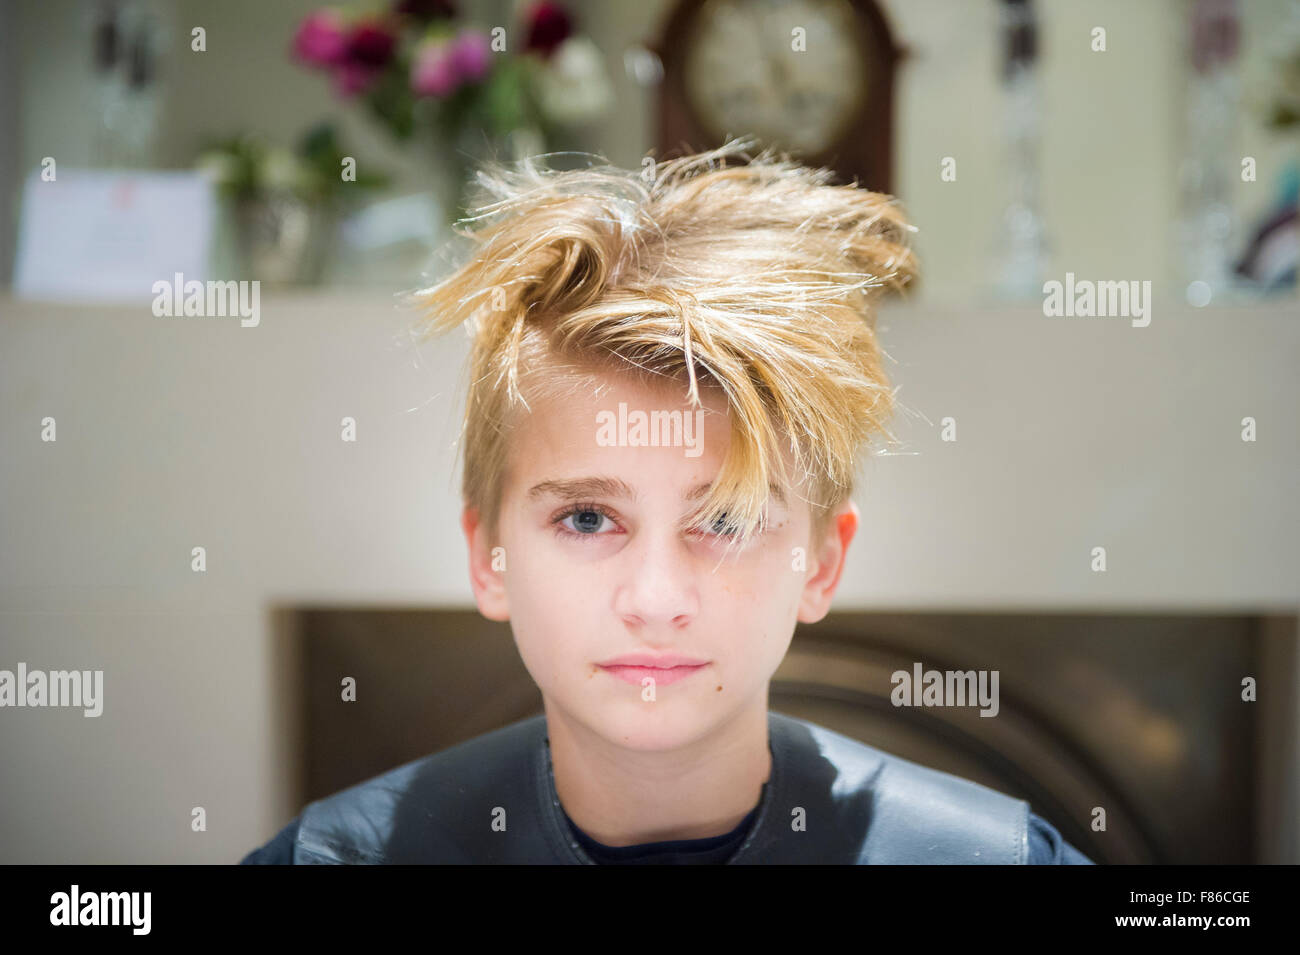 Un garçon blond a couper les cheveux Banque D'Images